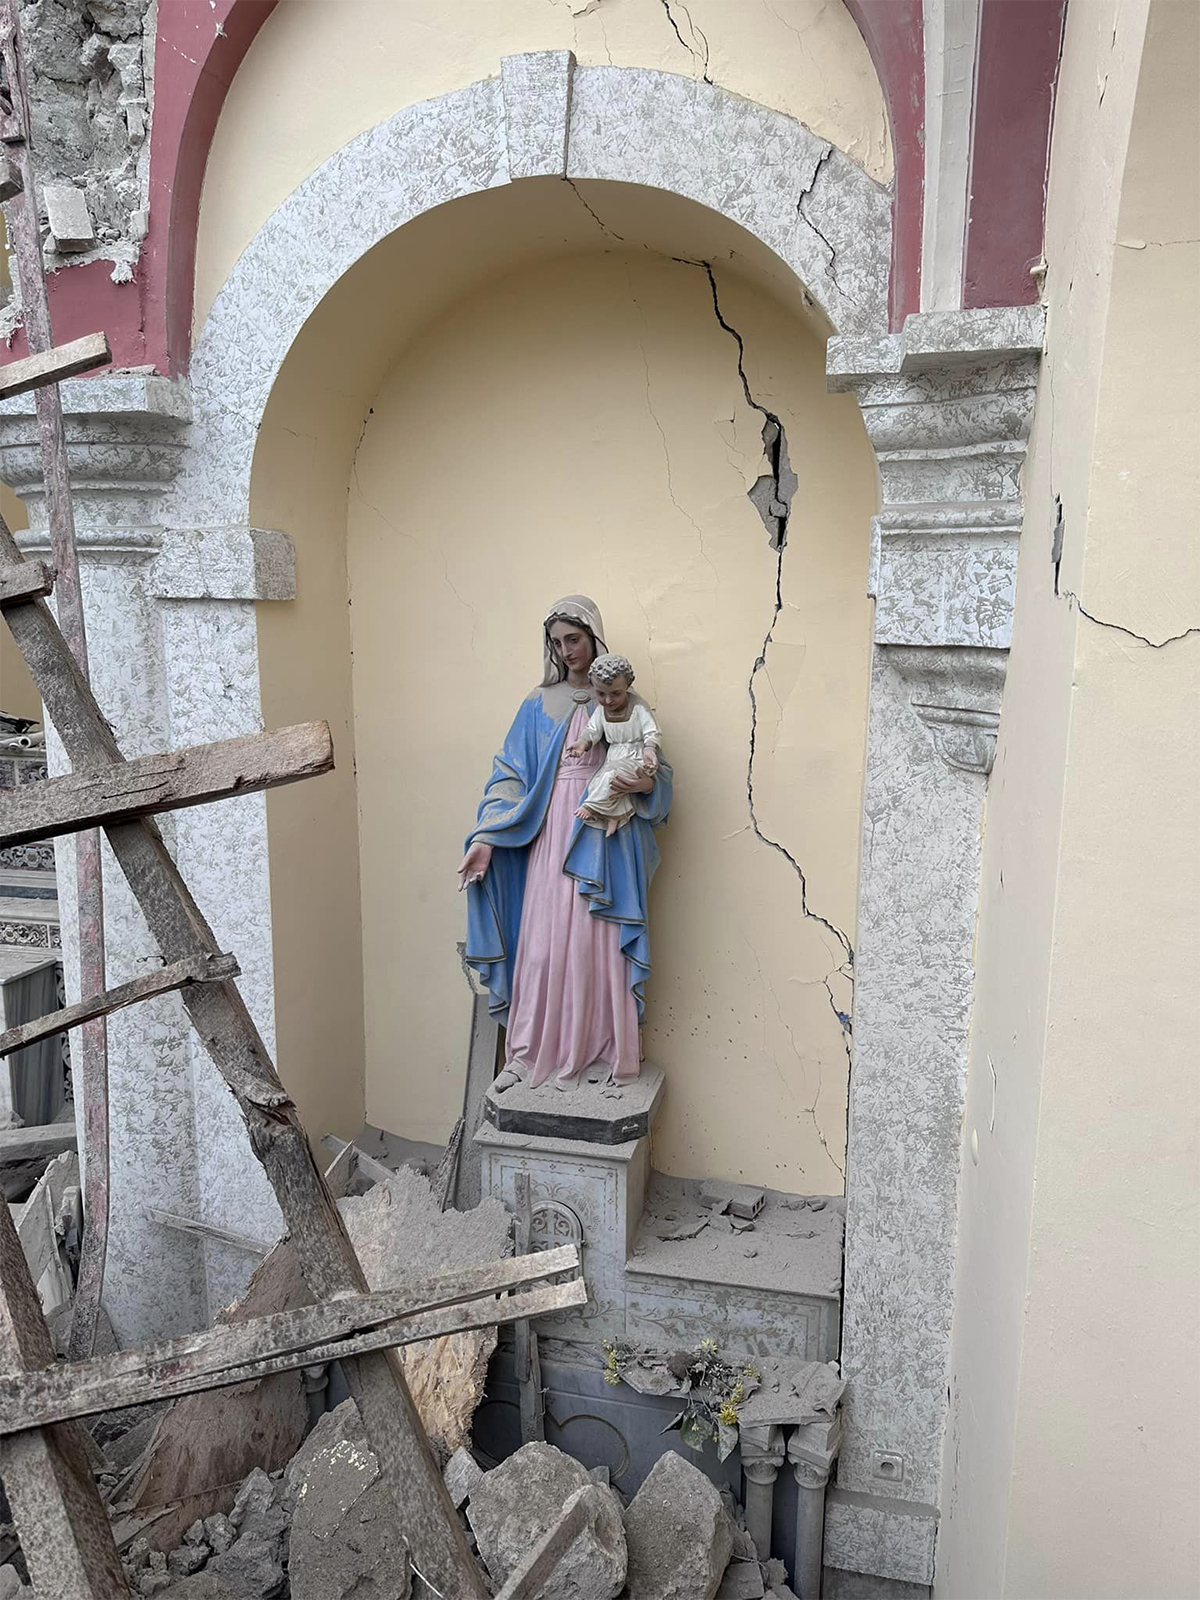 Nossa Senhora permanece de pé em meio aos escombros do terremoto na Turquia e Síria